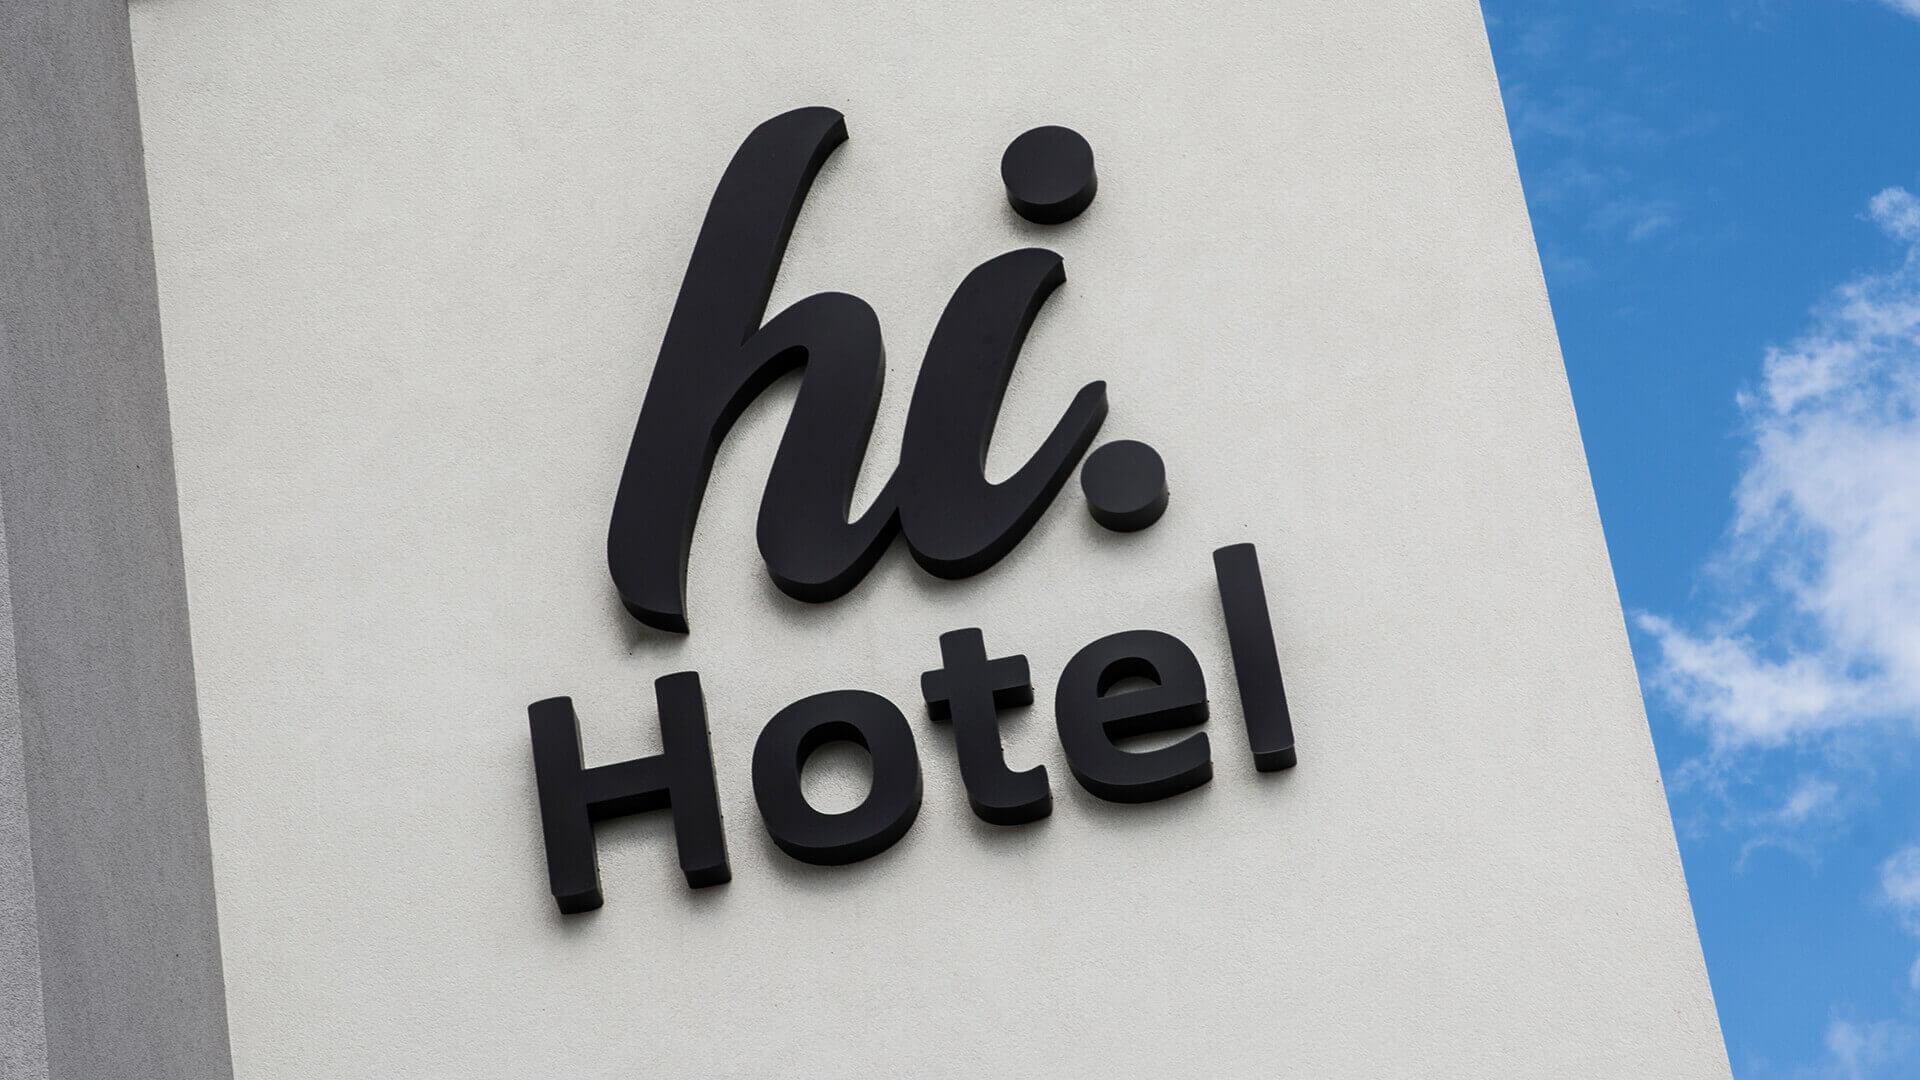 hi-hotel-an-der-Wand-an-der-Hinterseite-an-der-Tafel-an-unterbeleuchtet-an-dem-Eingang-an-der-Höhe-an-den-Linien-an-weißem-Logo-an-der-Firma-an-dem-Beton-gdansk-lotnisko (4)